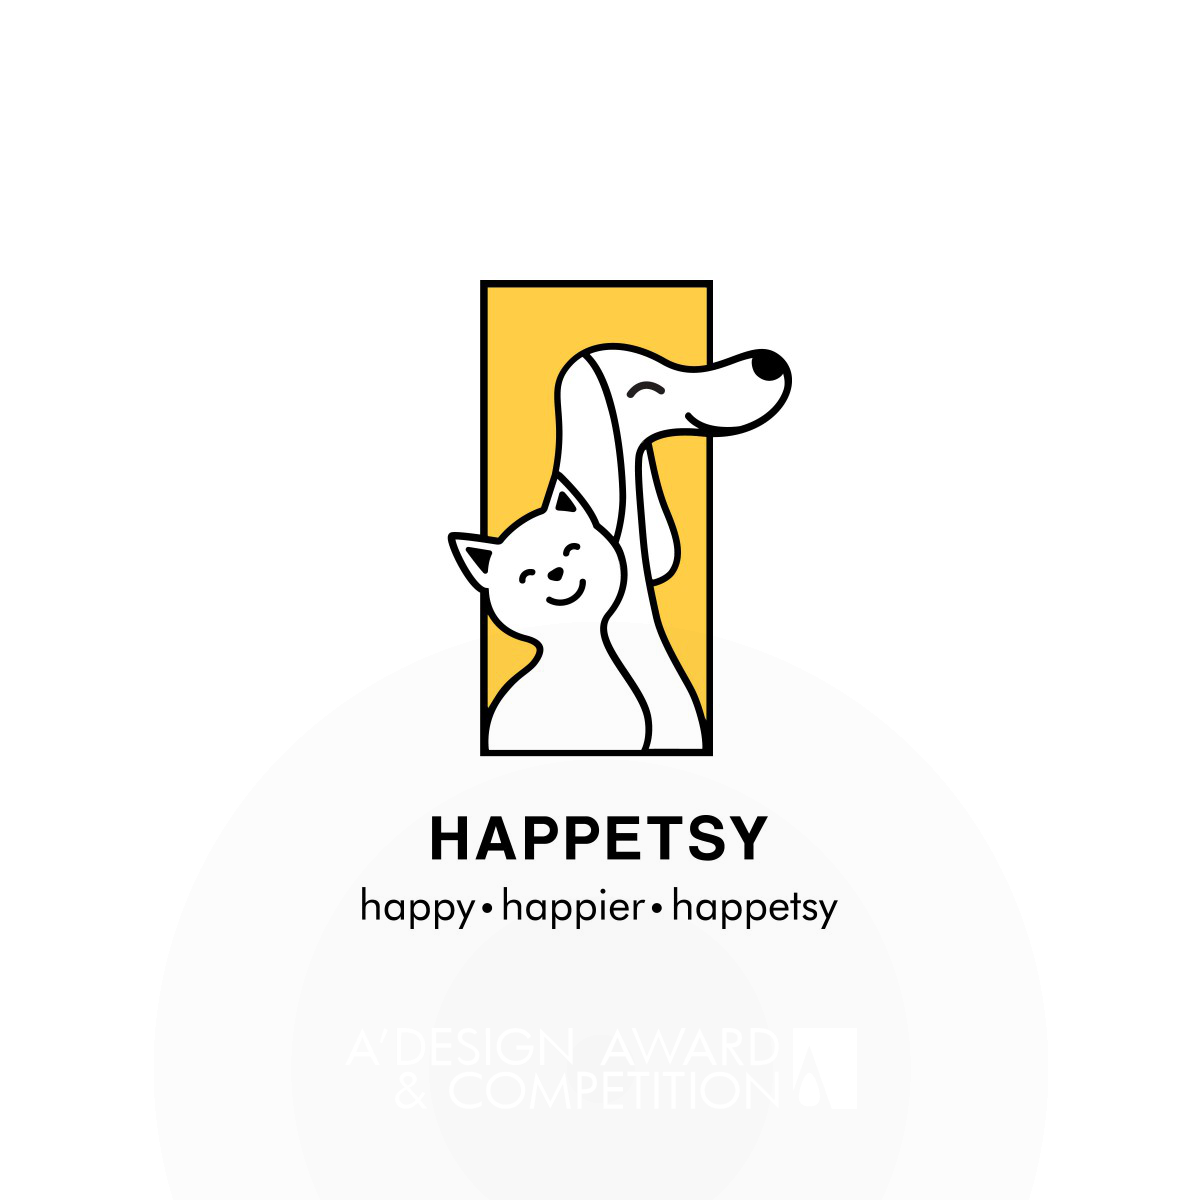 Happetsy Brand Identity